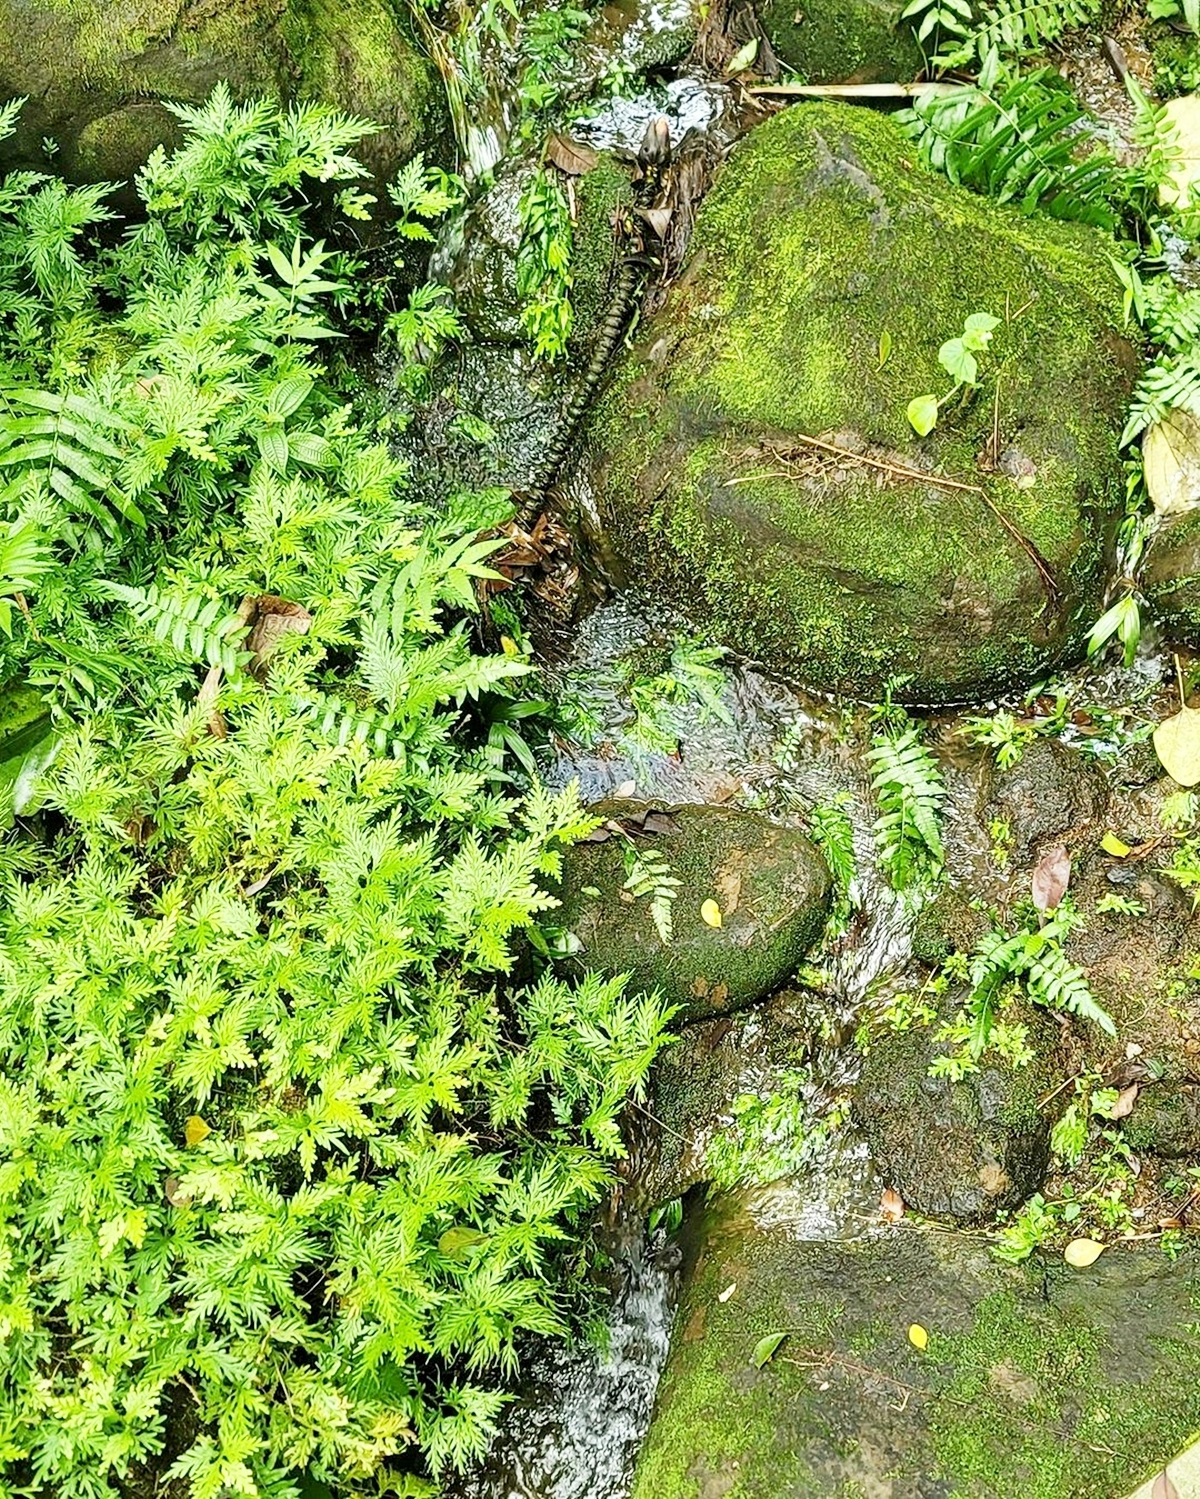 gruenbelag entfernen gruene steine im garten sauber machen hawaiitropicalbotanical